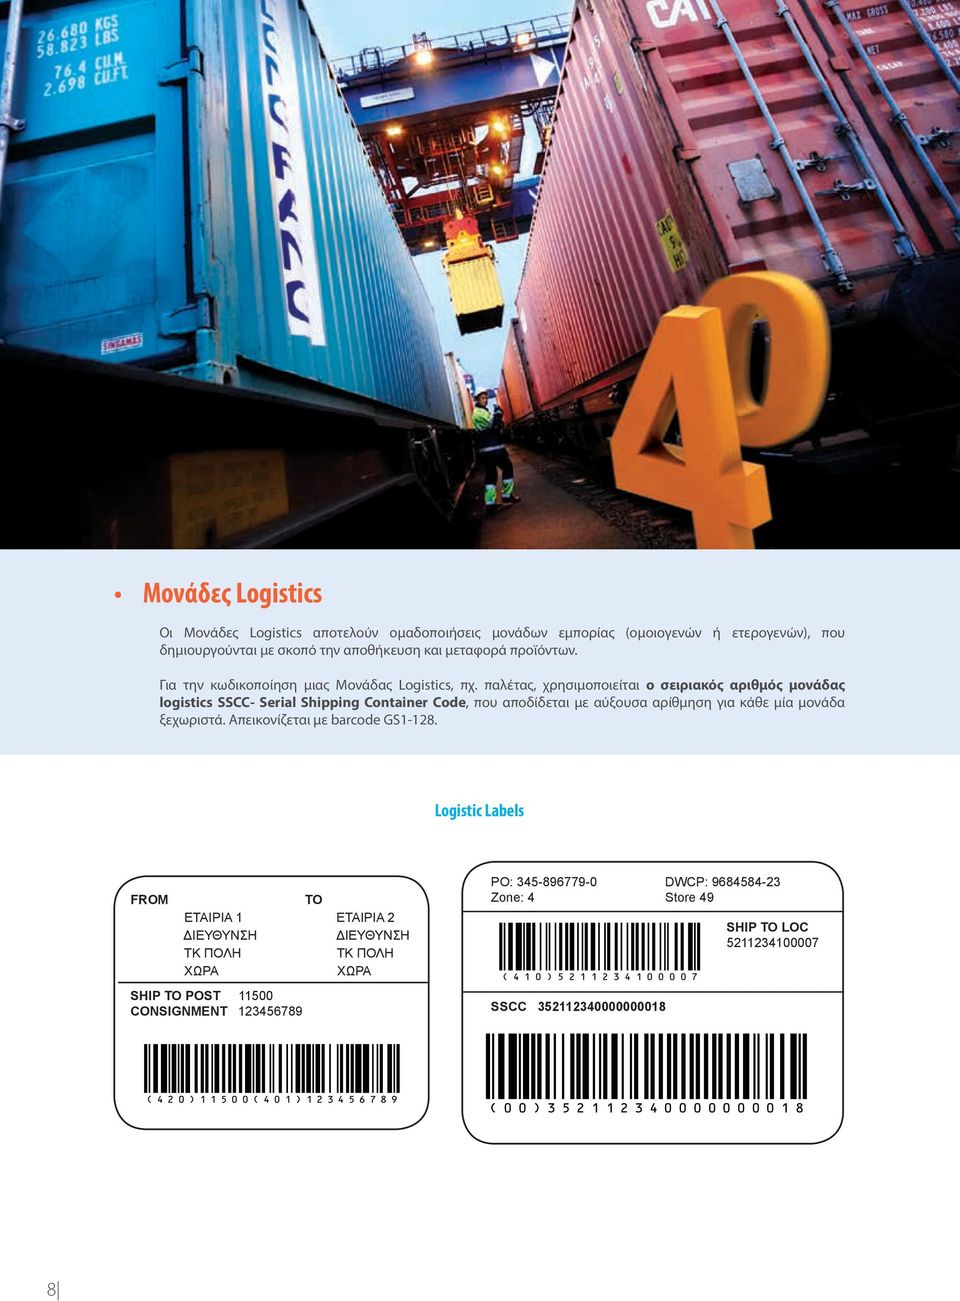 παλέτας, χρησιμοποιείται ο σειριακός αριθμός μονάδας logistics SSCC- Serial Shipping Container Code, που αποδίδεται με αύξουσα αρίθμηση για κάθε μία μονάδα ξεχωριστά.